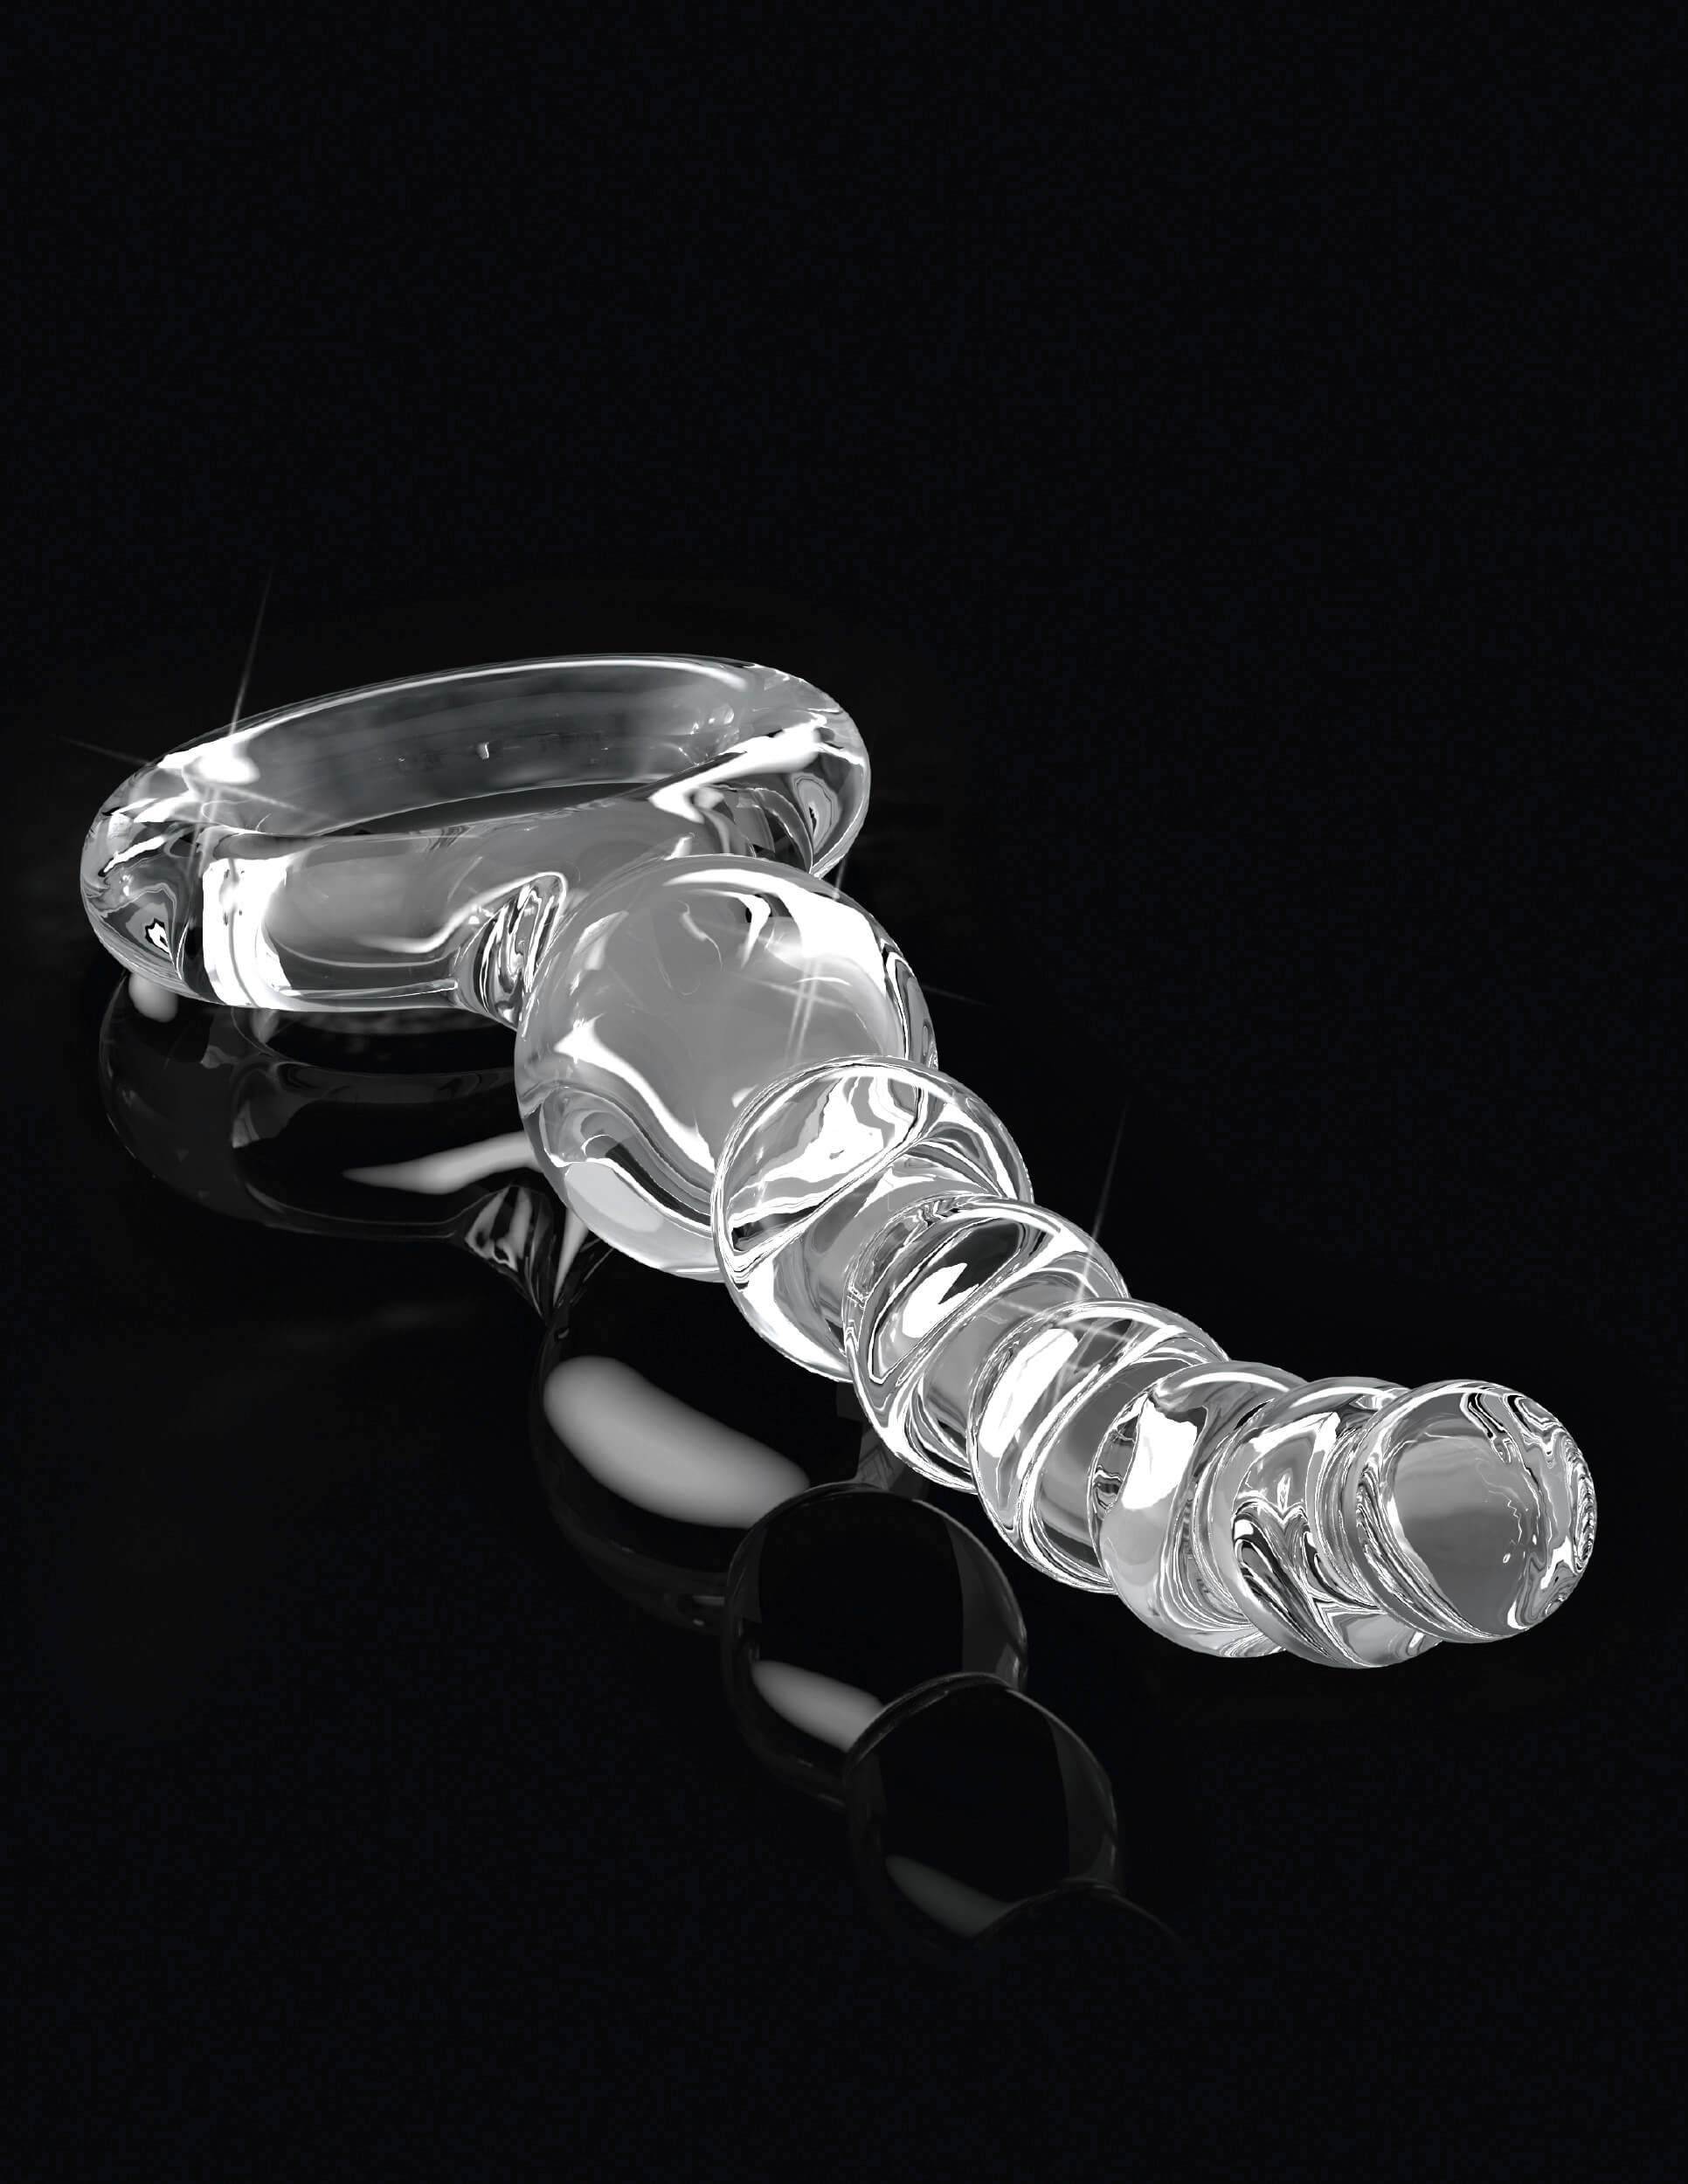 Gömbös üveg dildó fogógyűrűvel (áttetsző) kép